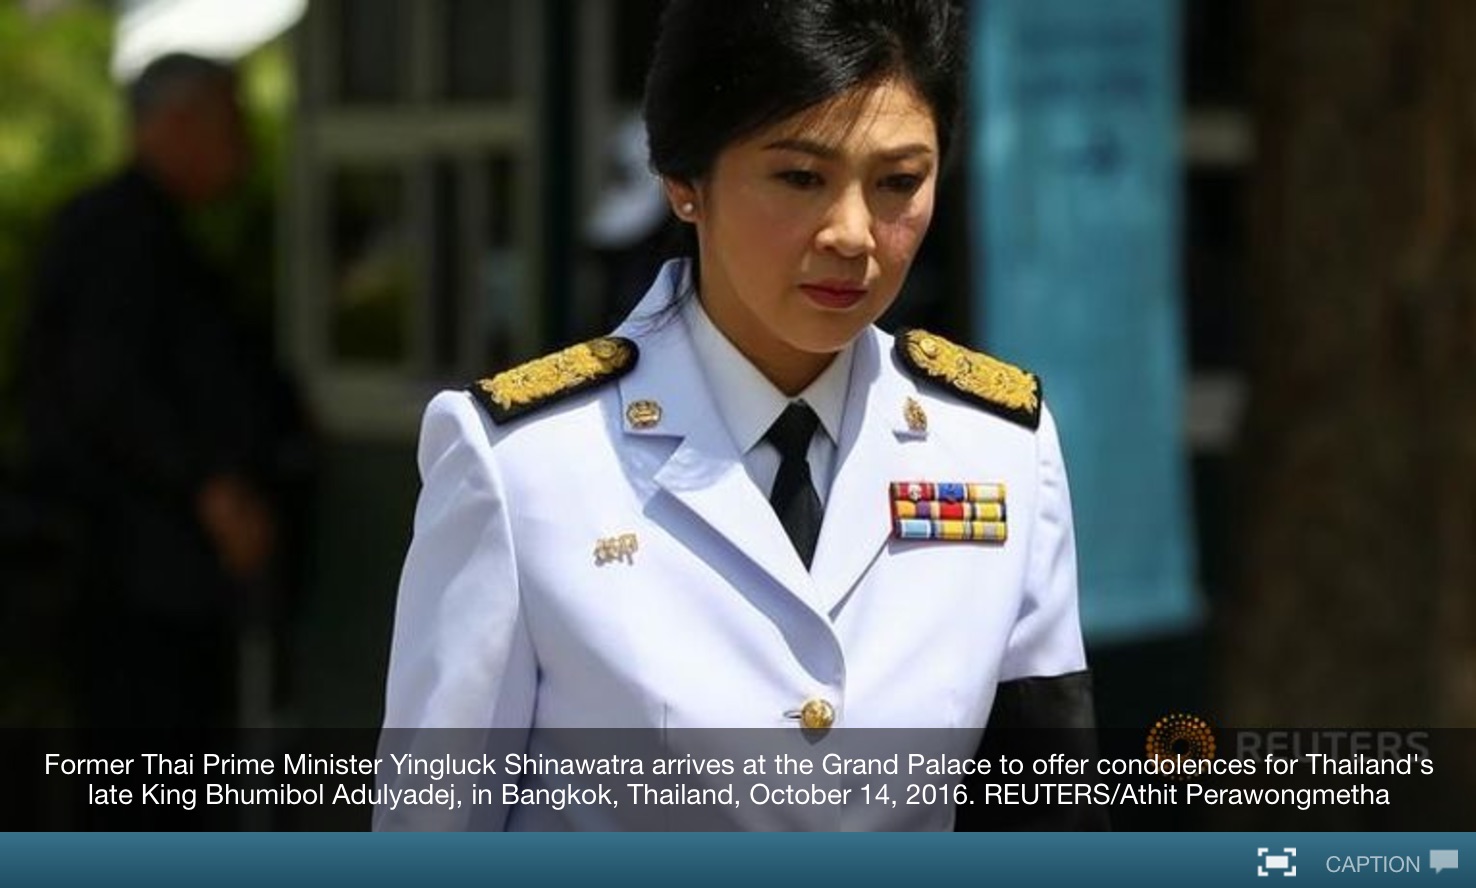 L'ex-Premier ministre a assuré qu'elle utiliserait tous les moyens possibles pour se défendre. Copie d'écran de Channel News Asia, le 21 octobre 2016.